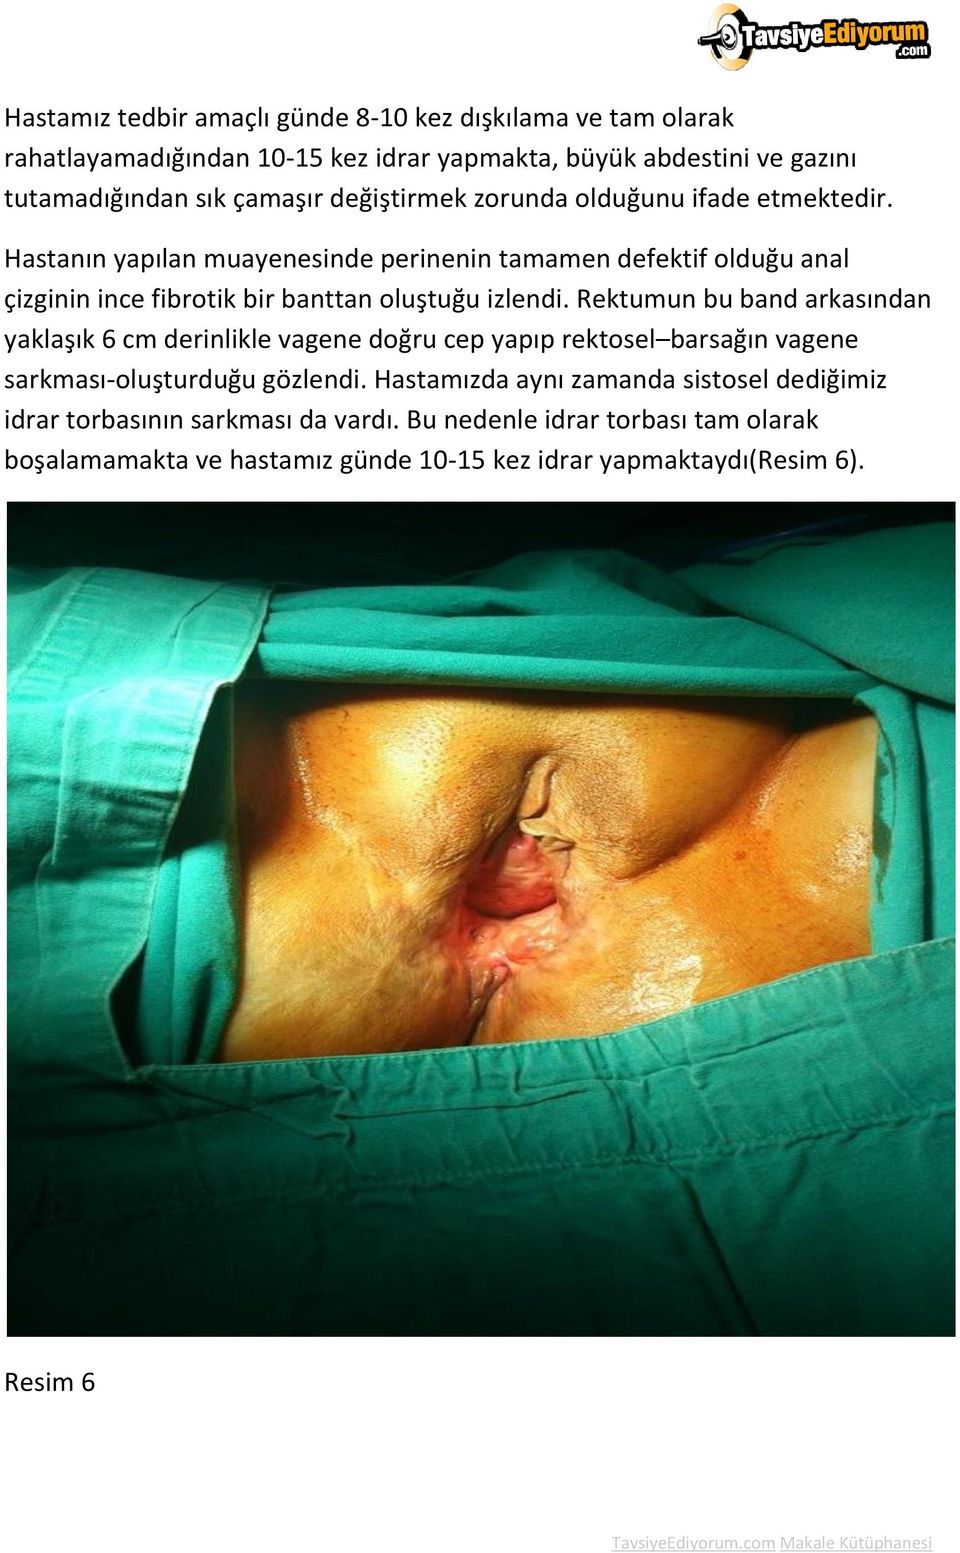 Hastanın yapılan muayenesinde perinenin tamamen defektif olduğu anal çizginin ince fibrotik bir banttan oluştuğu izlendi.